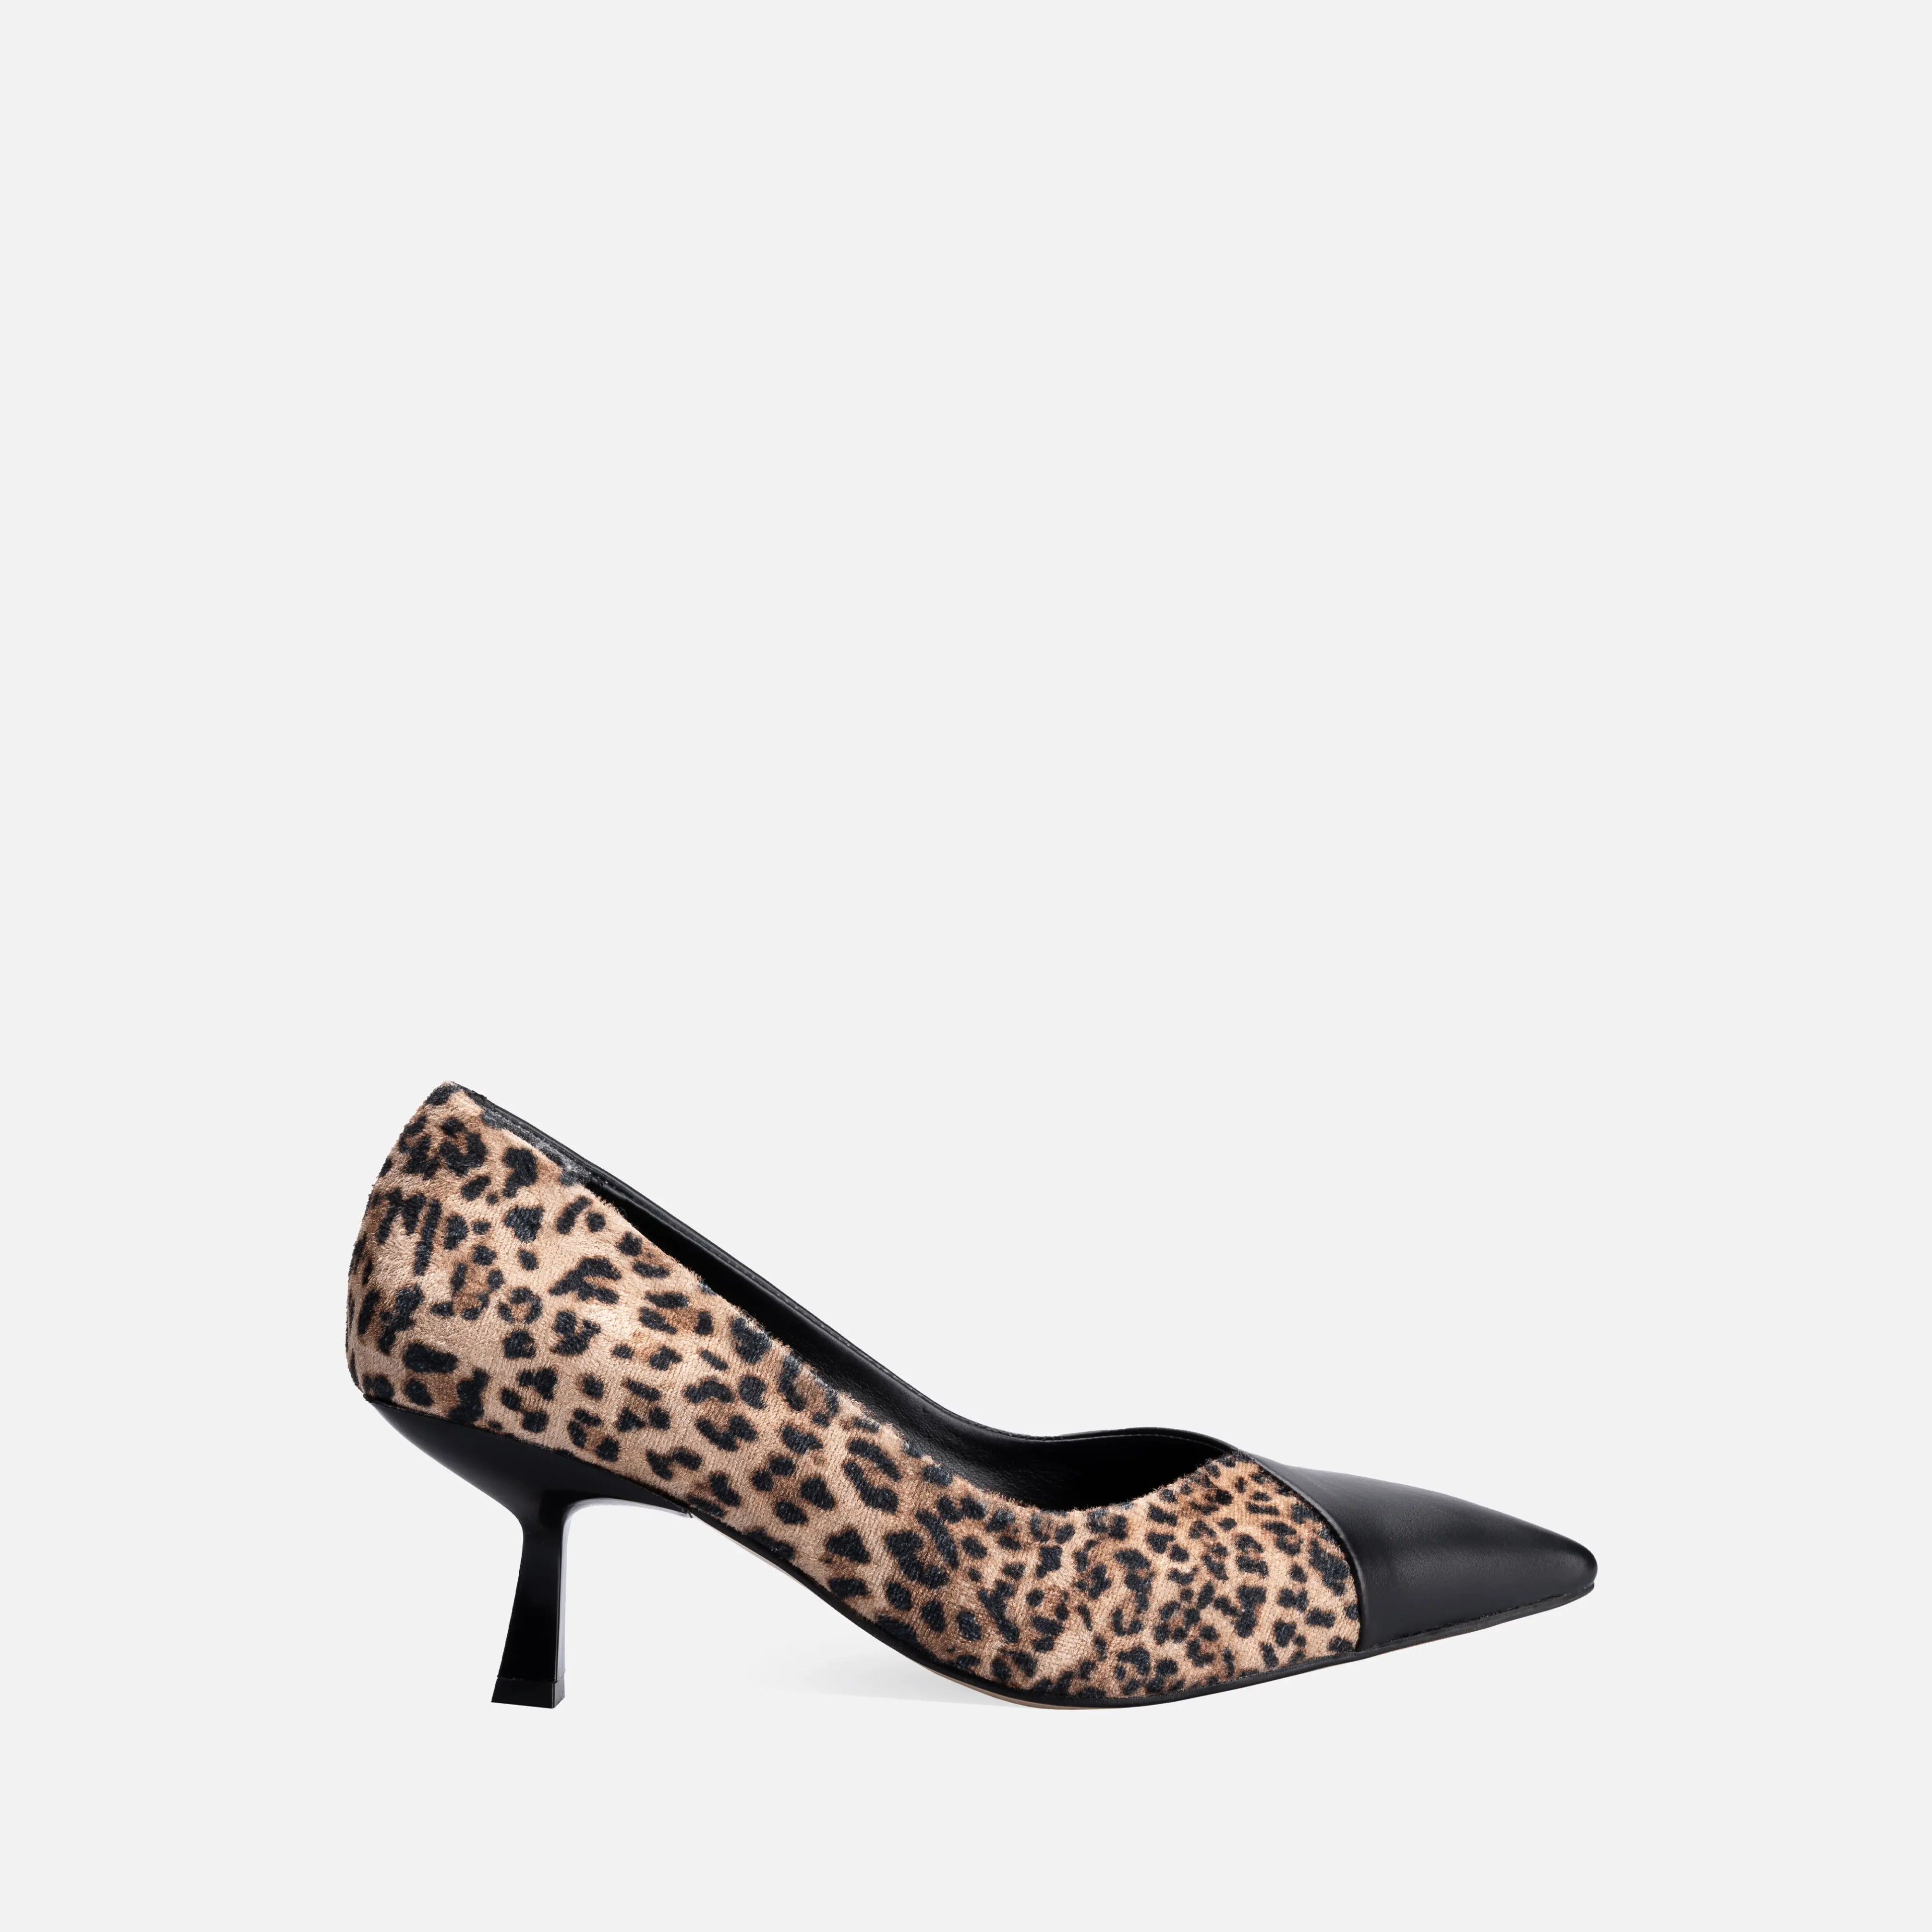 Vivien High Heeled Shoes Pumps Leopard Print 